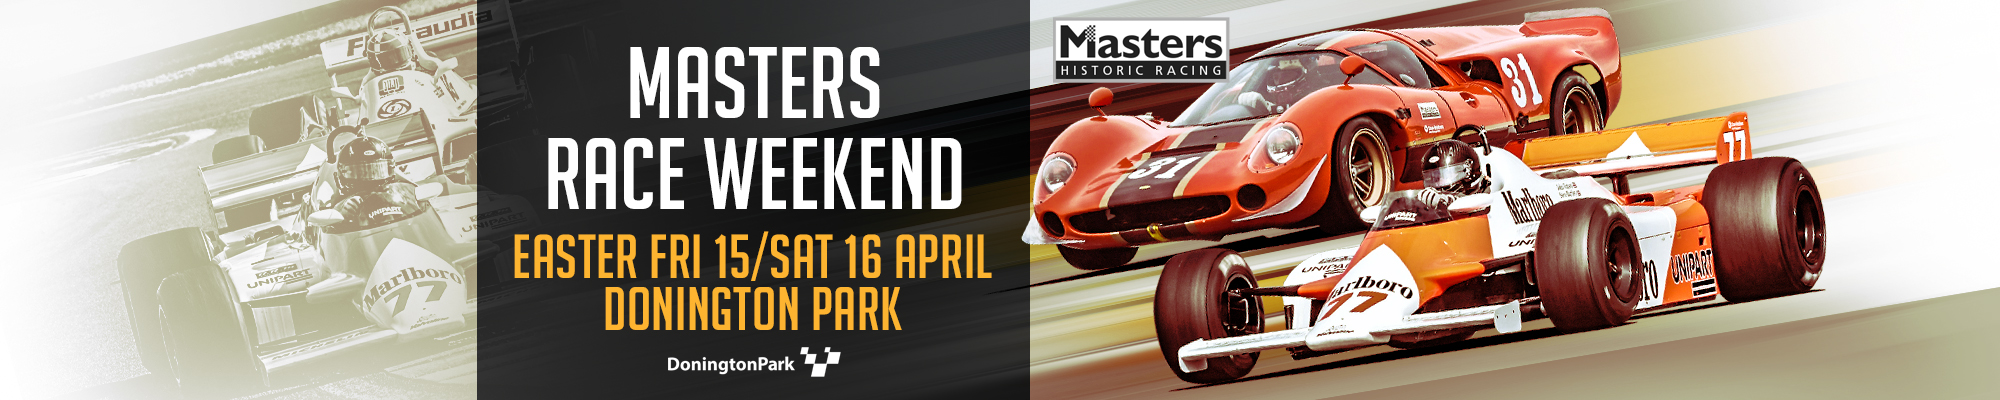 Masters Race Weekend